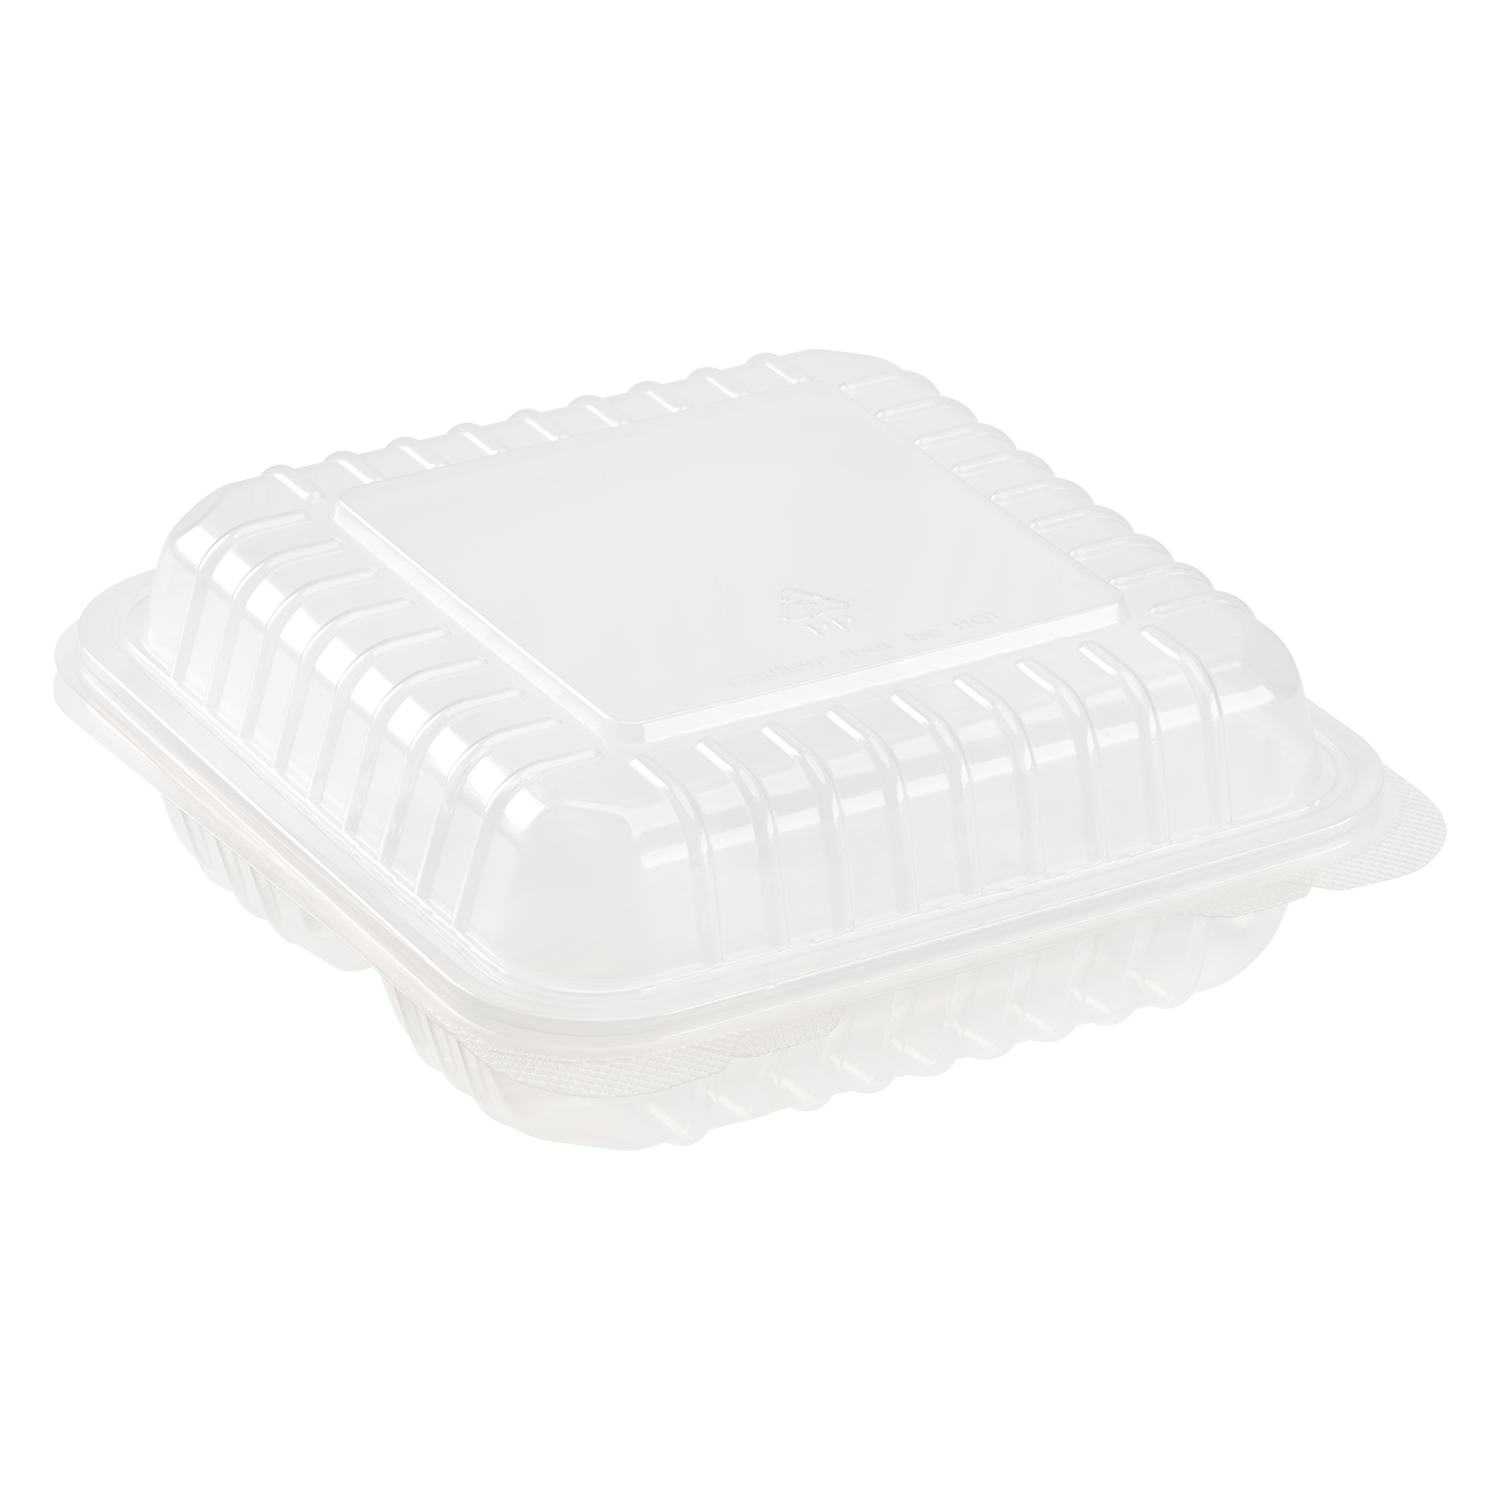 styrofoam trays with lid